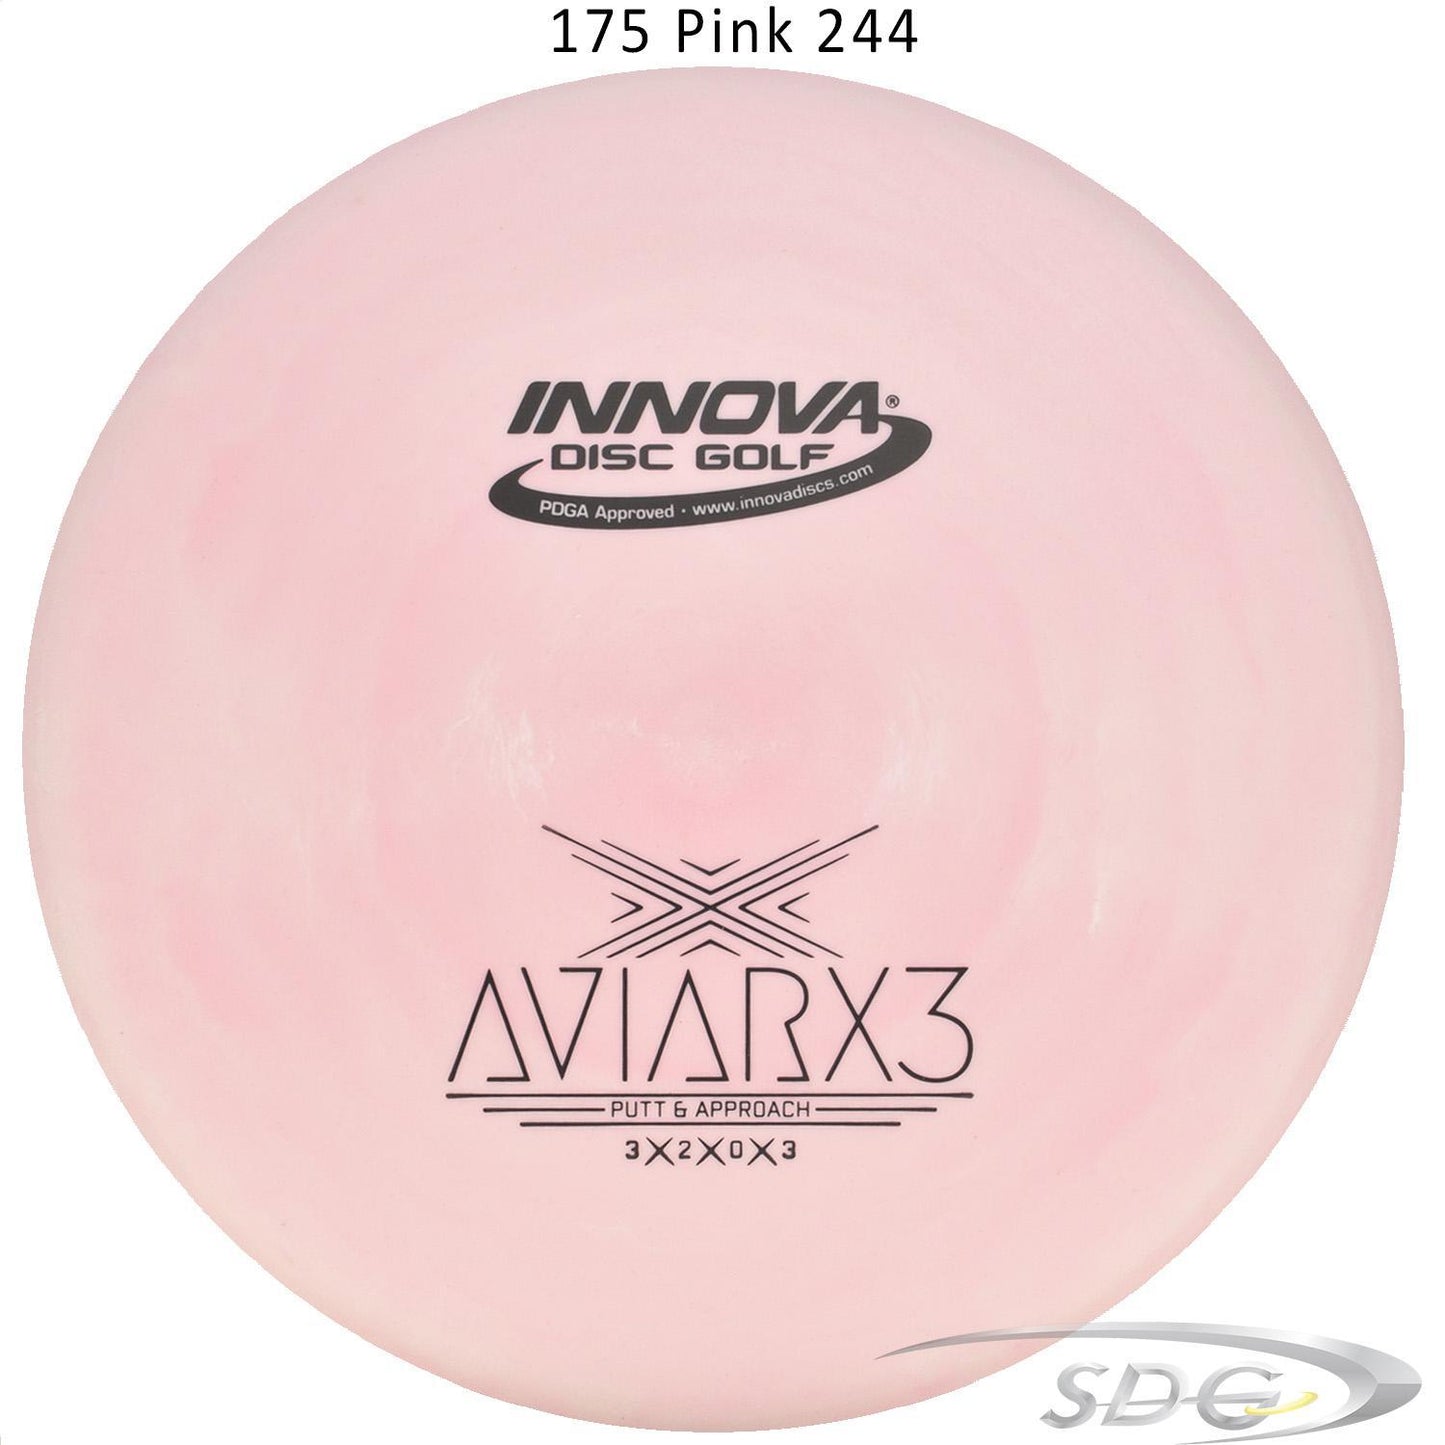 innova-dx-aviarx3-disc-golf-putter 175 Pink 244 